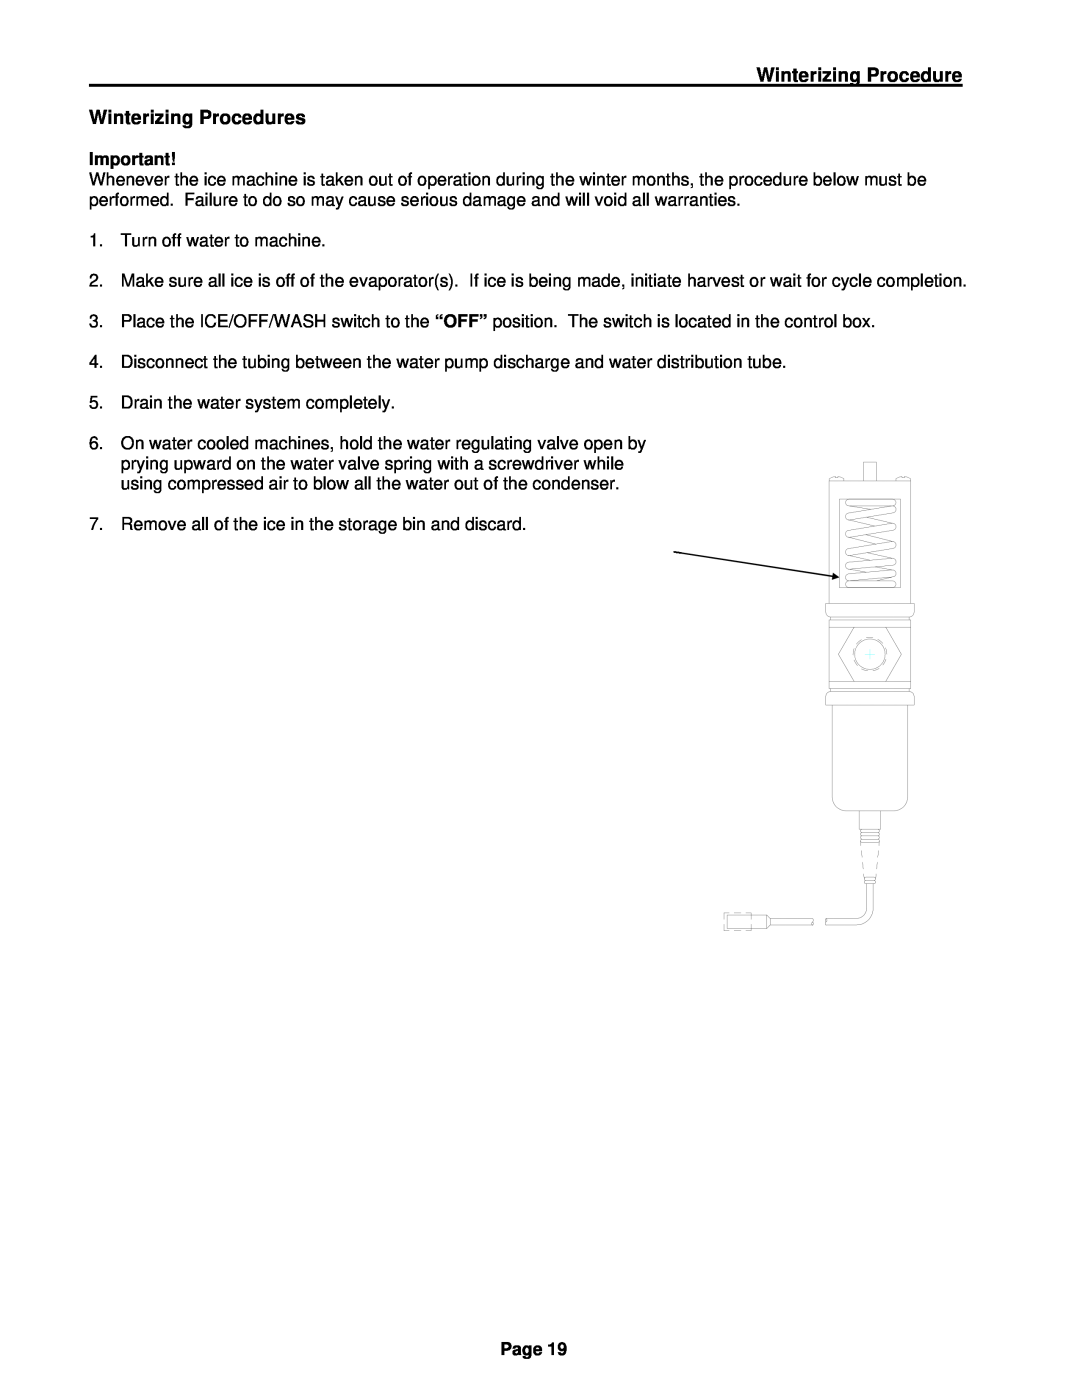 Cornelius CCM CCU manual Winterizing Procedure Winterizing Procedures, Page 